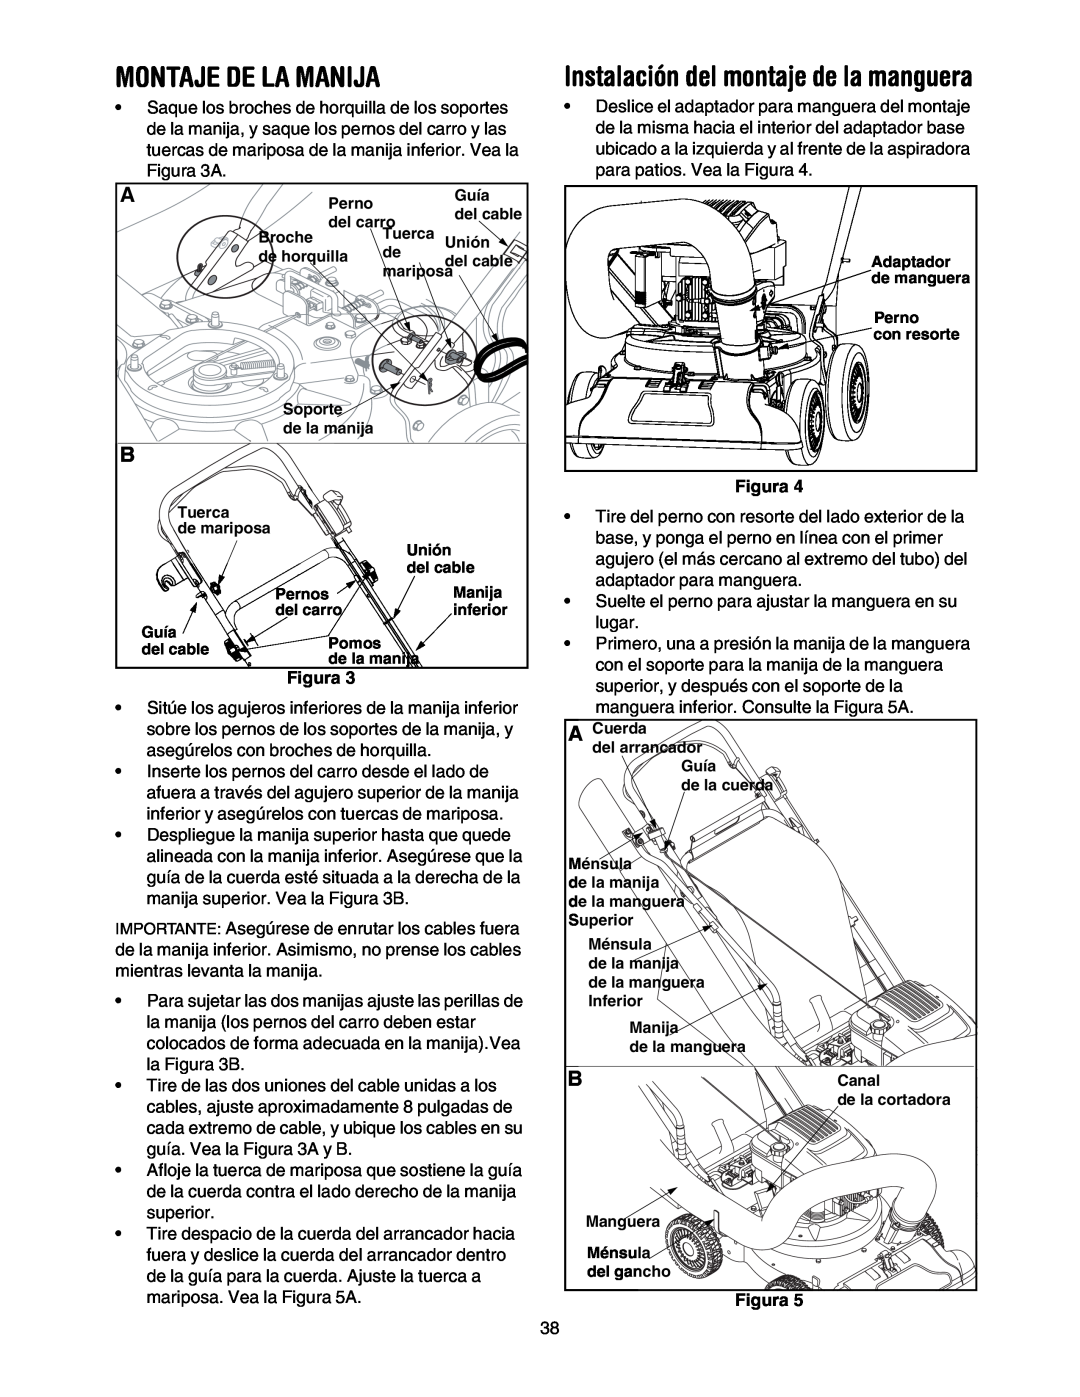 Craftsman 247.77099 operating instructions Montaje De La Manija, Instalación del montaje de la manguera, Figura 